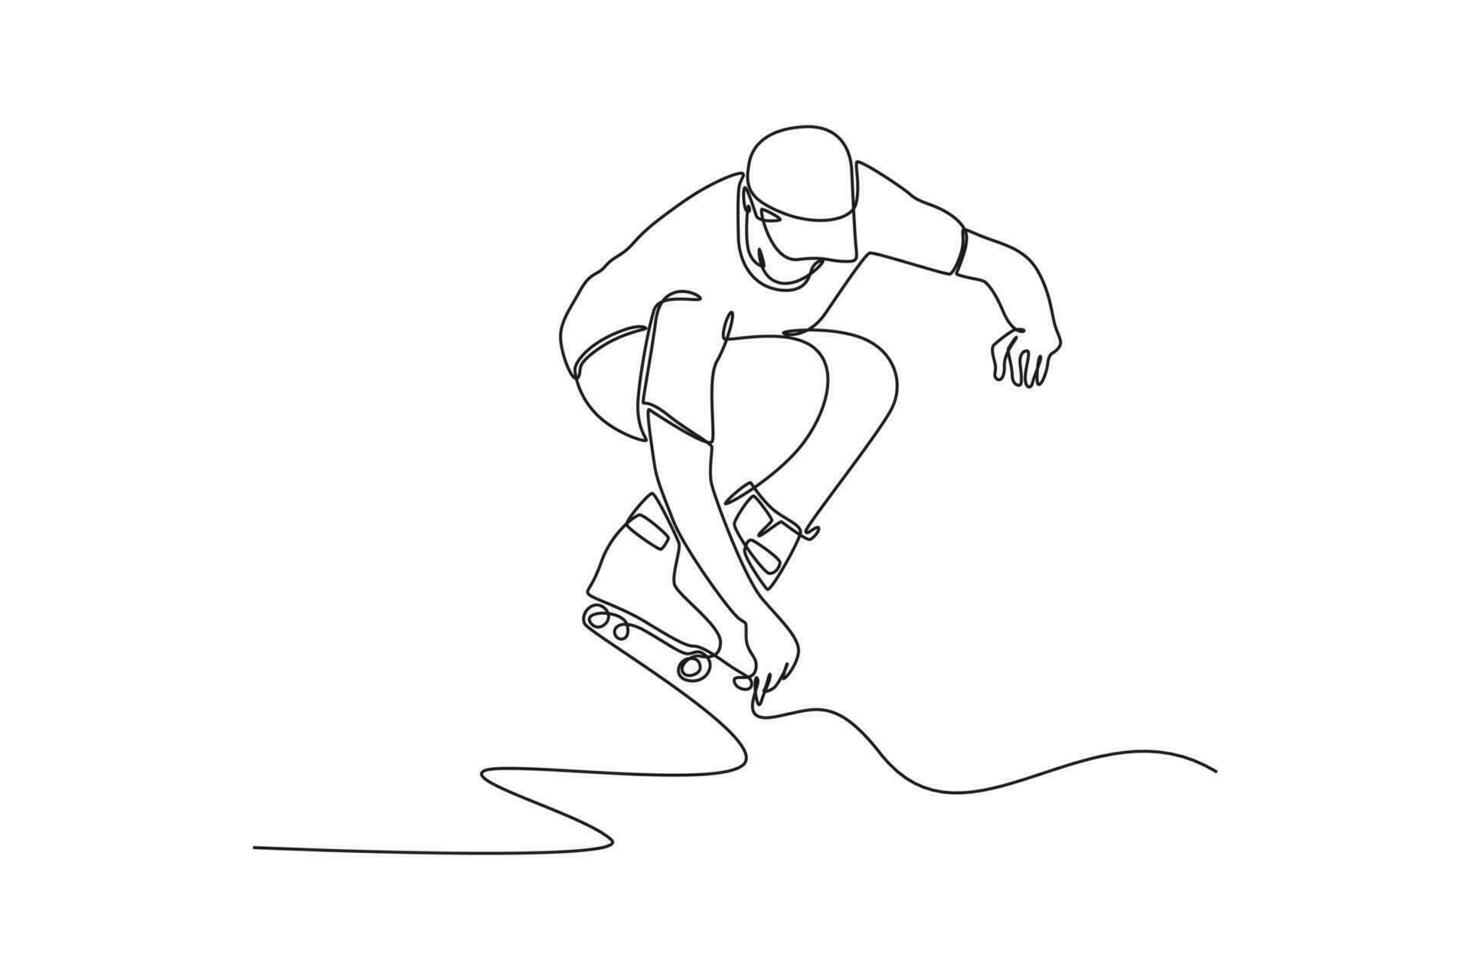 kontinuierlich einer Linie Zeichnung Menschen durchführen draussen Aktivitäten. Sport Konzept. Single Linie zeichnen Design Vektor Grafik Illustration.